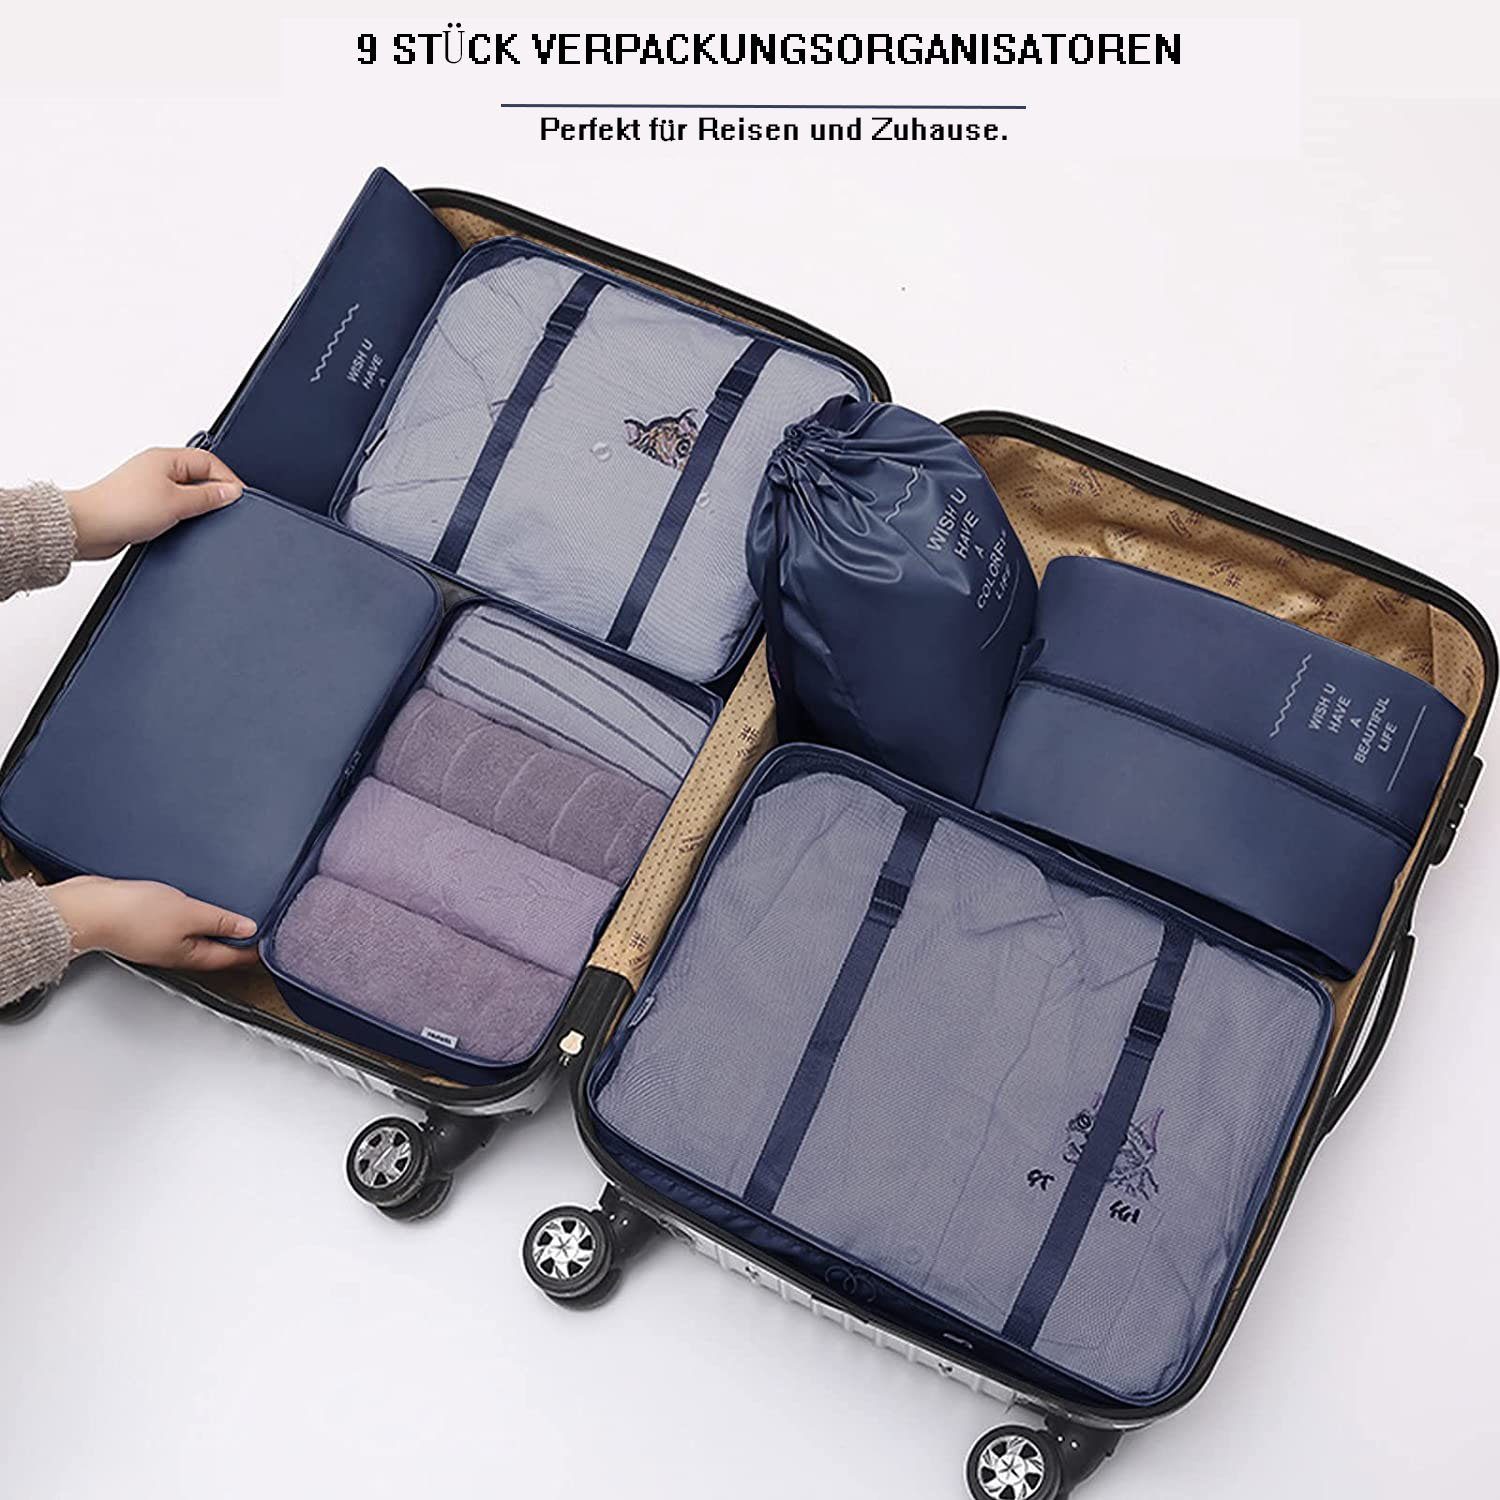 zggzerg Kofferorganizer Packing Cubes Suitcase,Organizer for Schuhtaschen mit Reisezubehör blau für